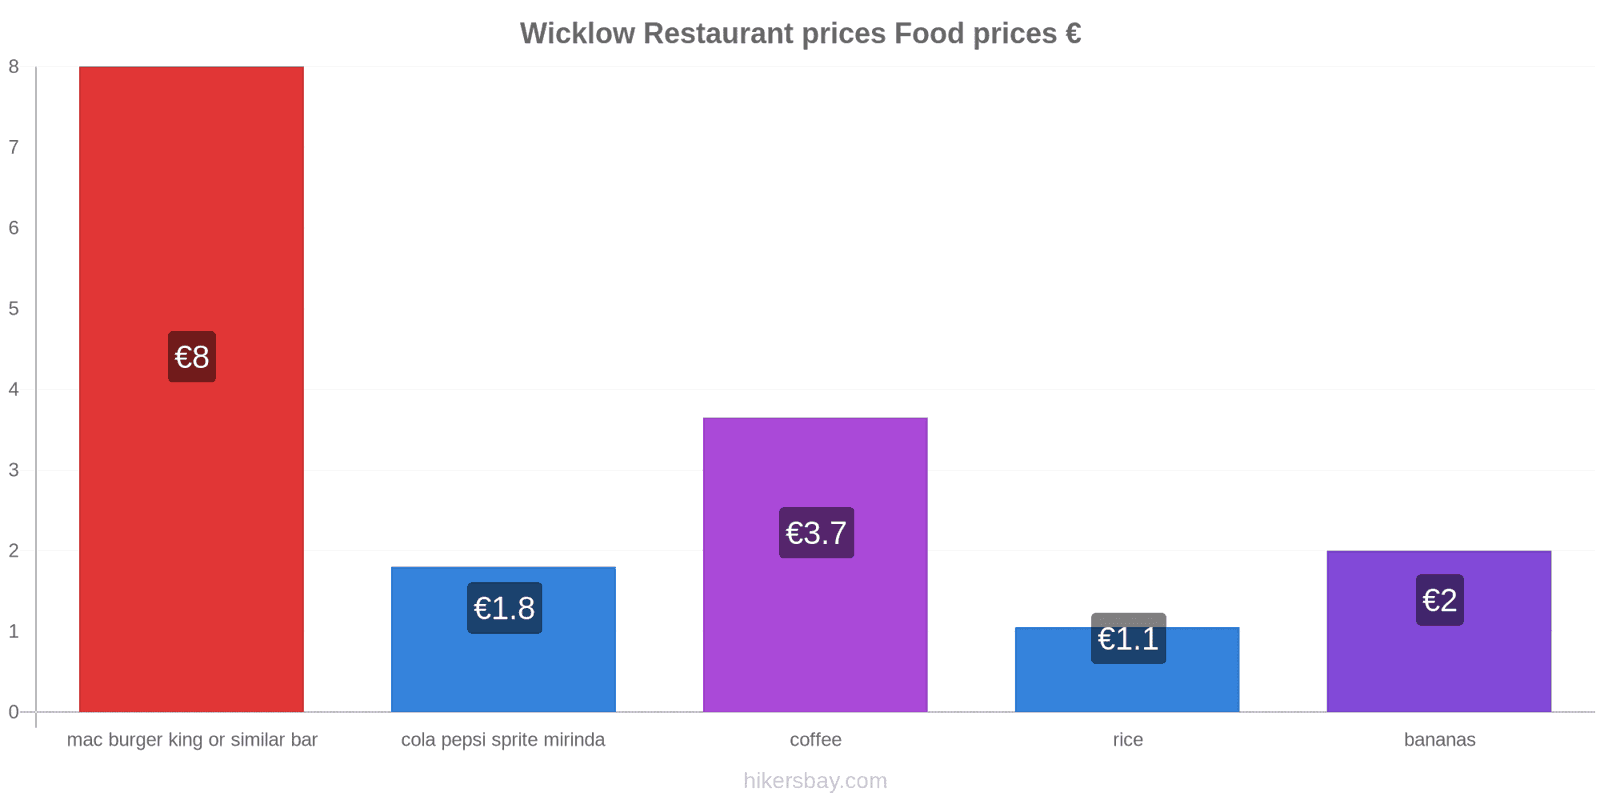 Wicklow price changes hikersbay.com